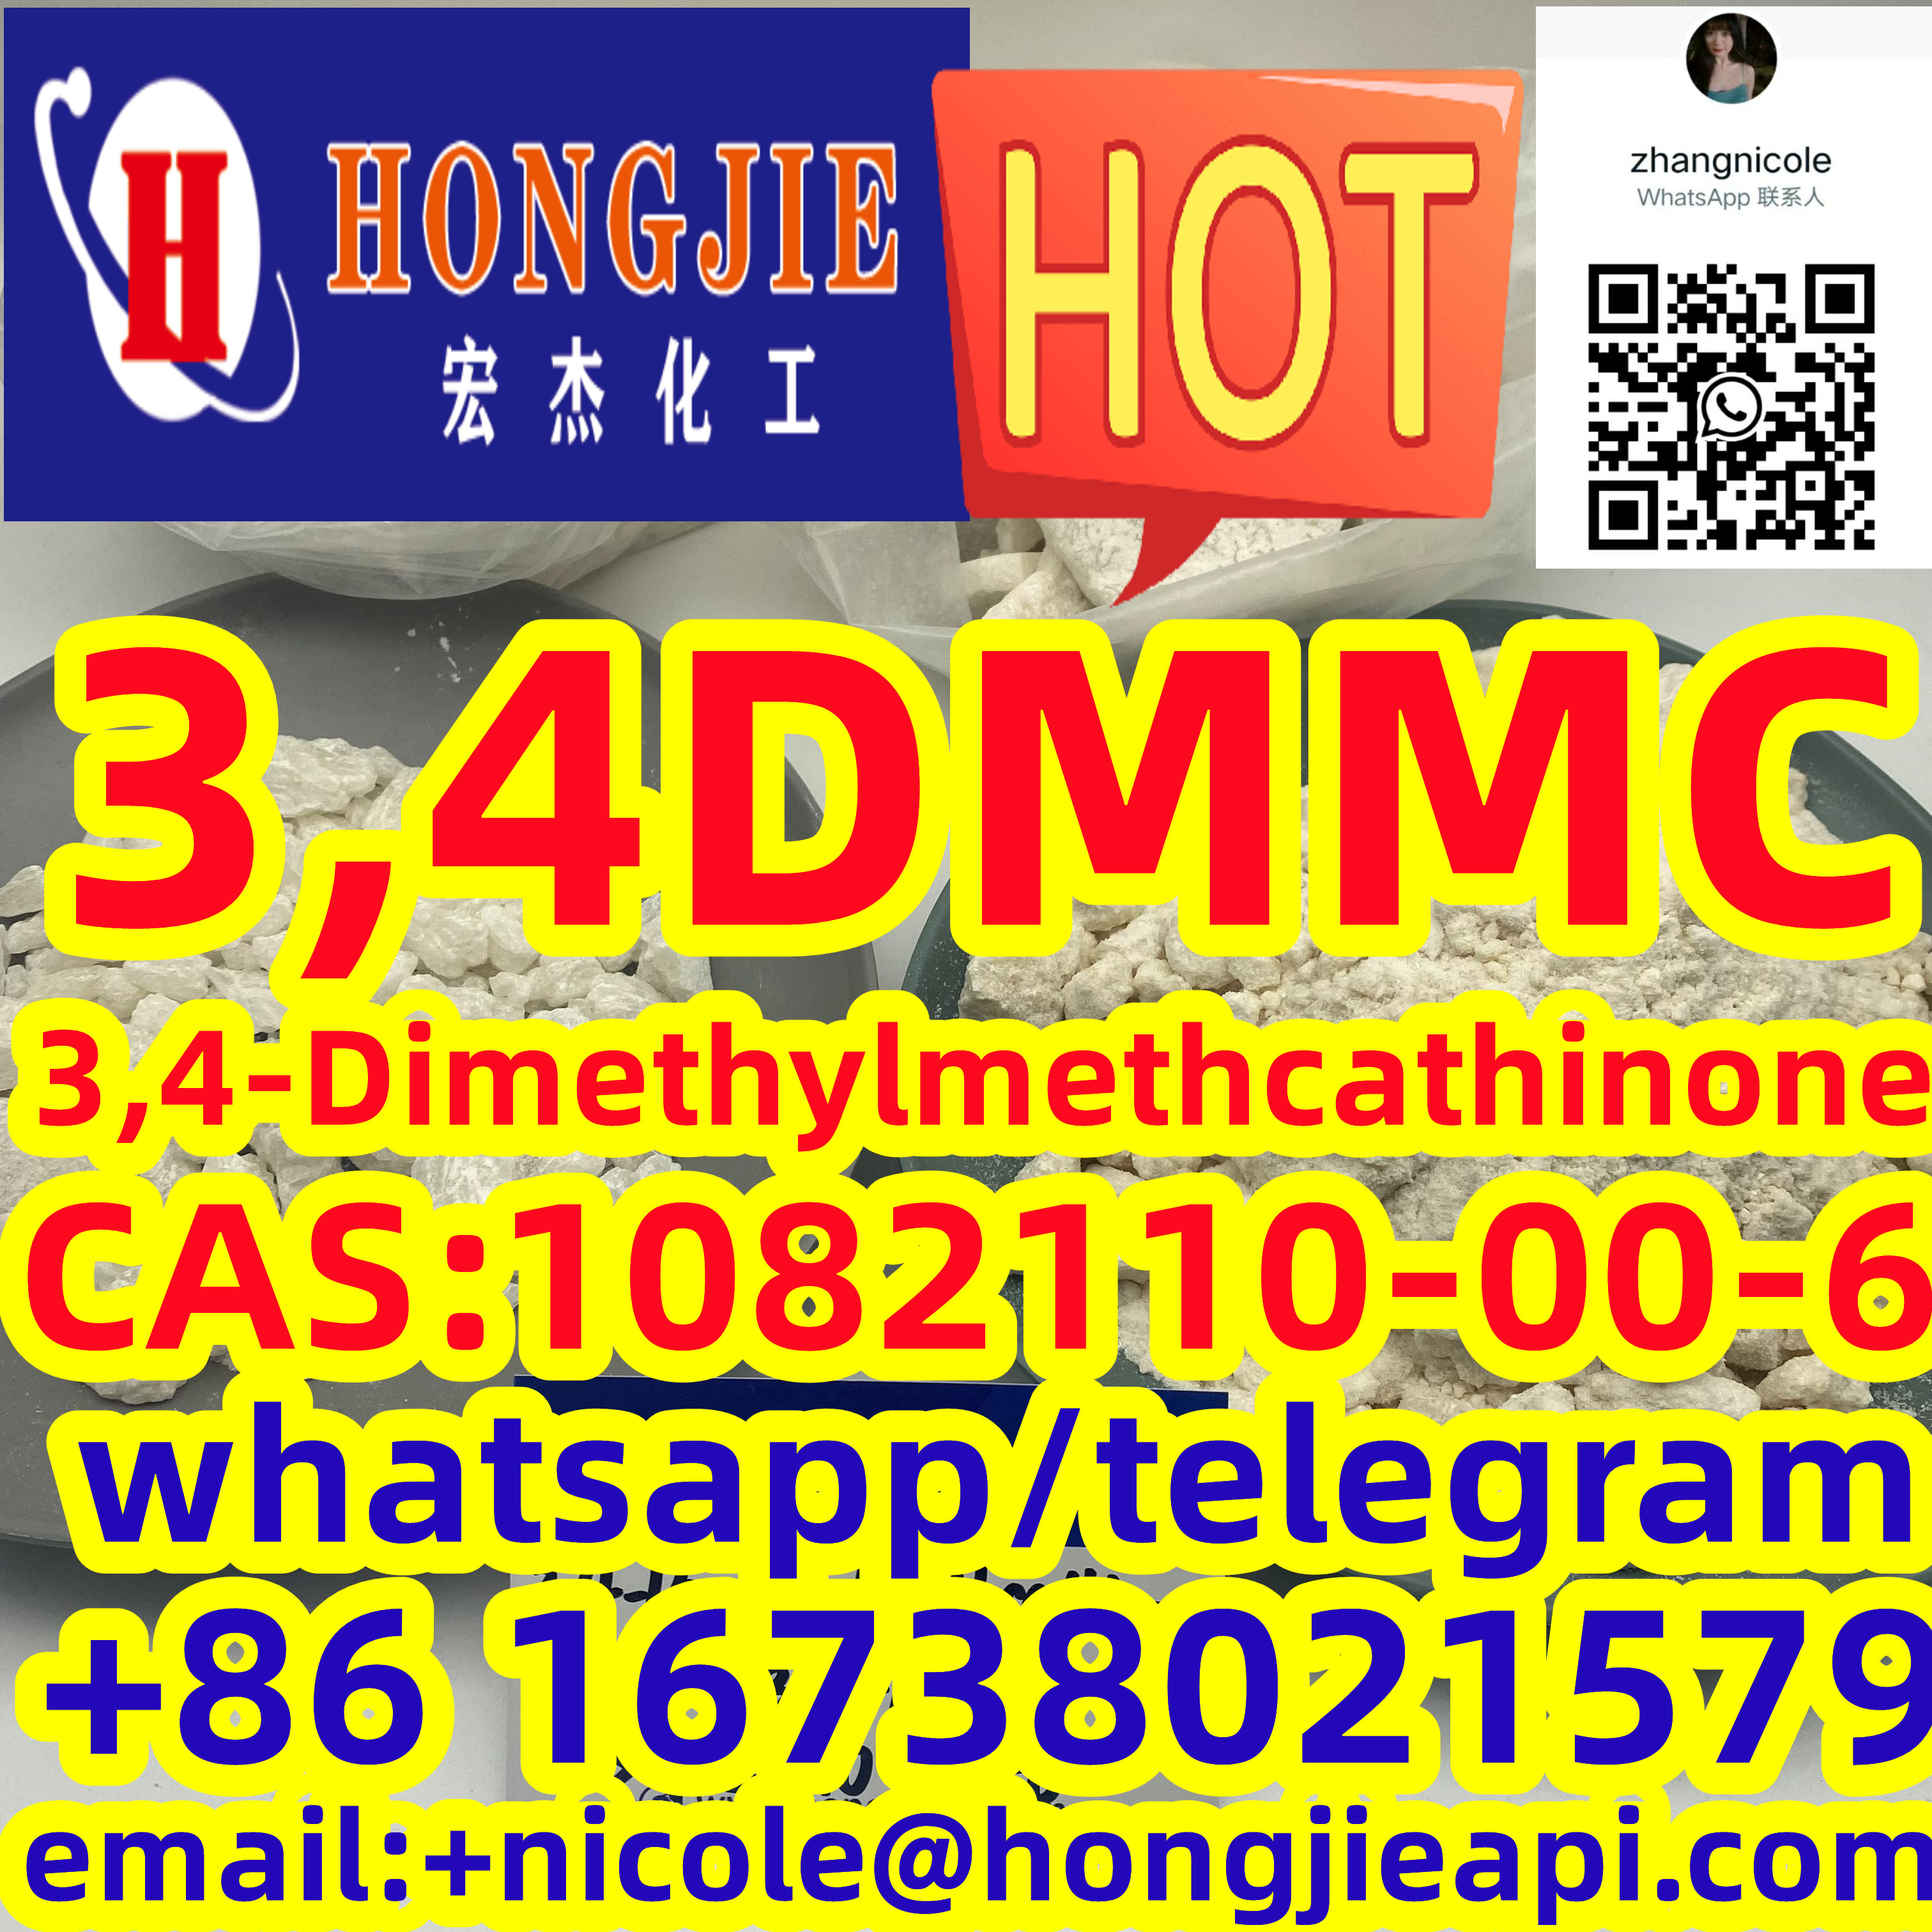 Low price 3,4DMMC 3,4-Dimethylmethcathinone CAS:1082110-00-6